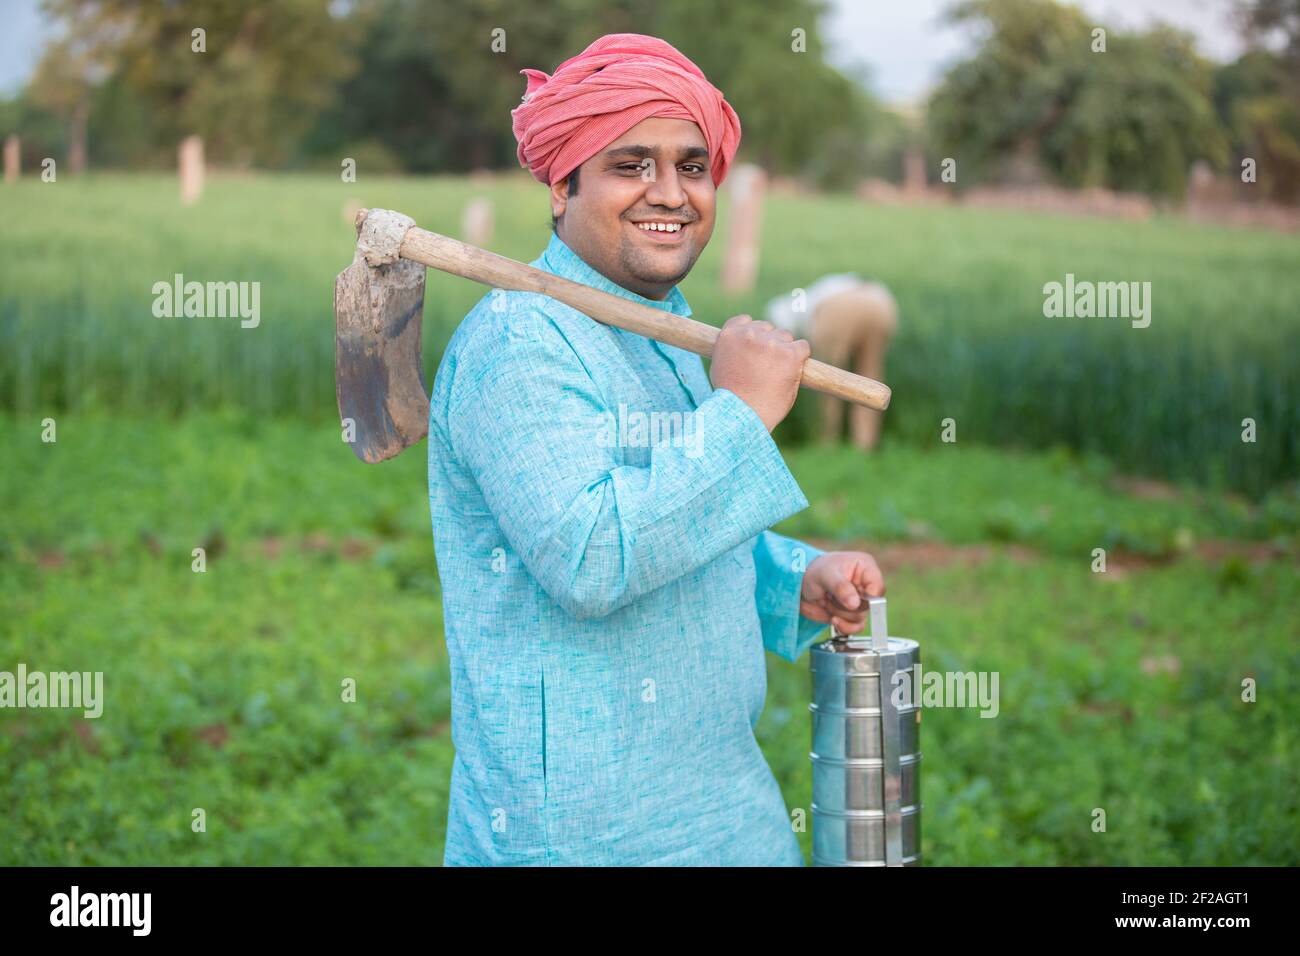 Portrait von glücklich indischen männlichen Landwirt hält Pfand Garten Spade / Schaufel oder landwirtschaftliche Werkzeug und Tipping-Box. Stockfoto